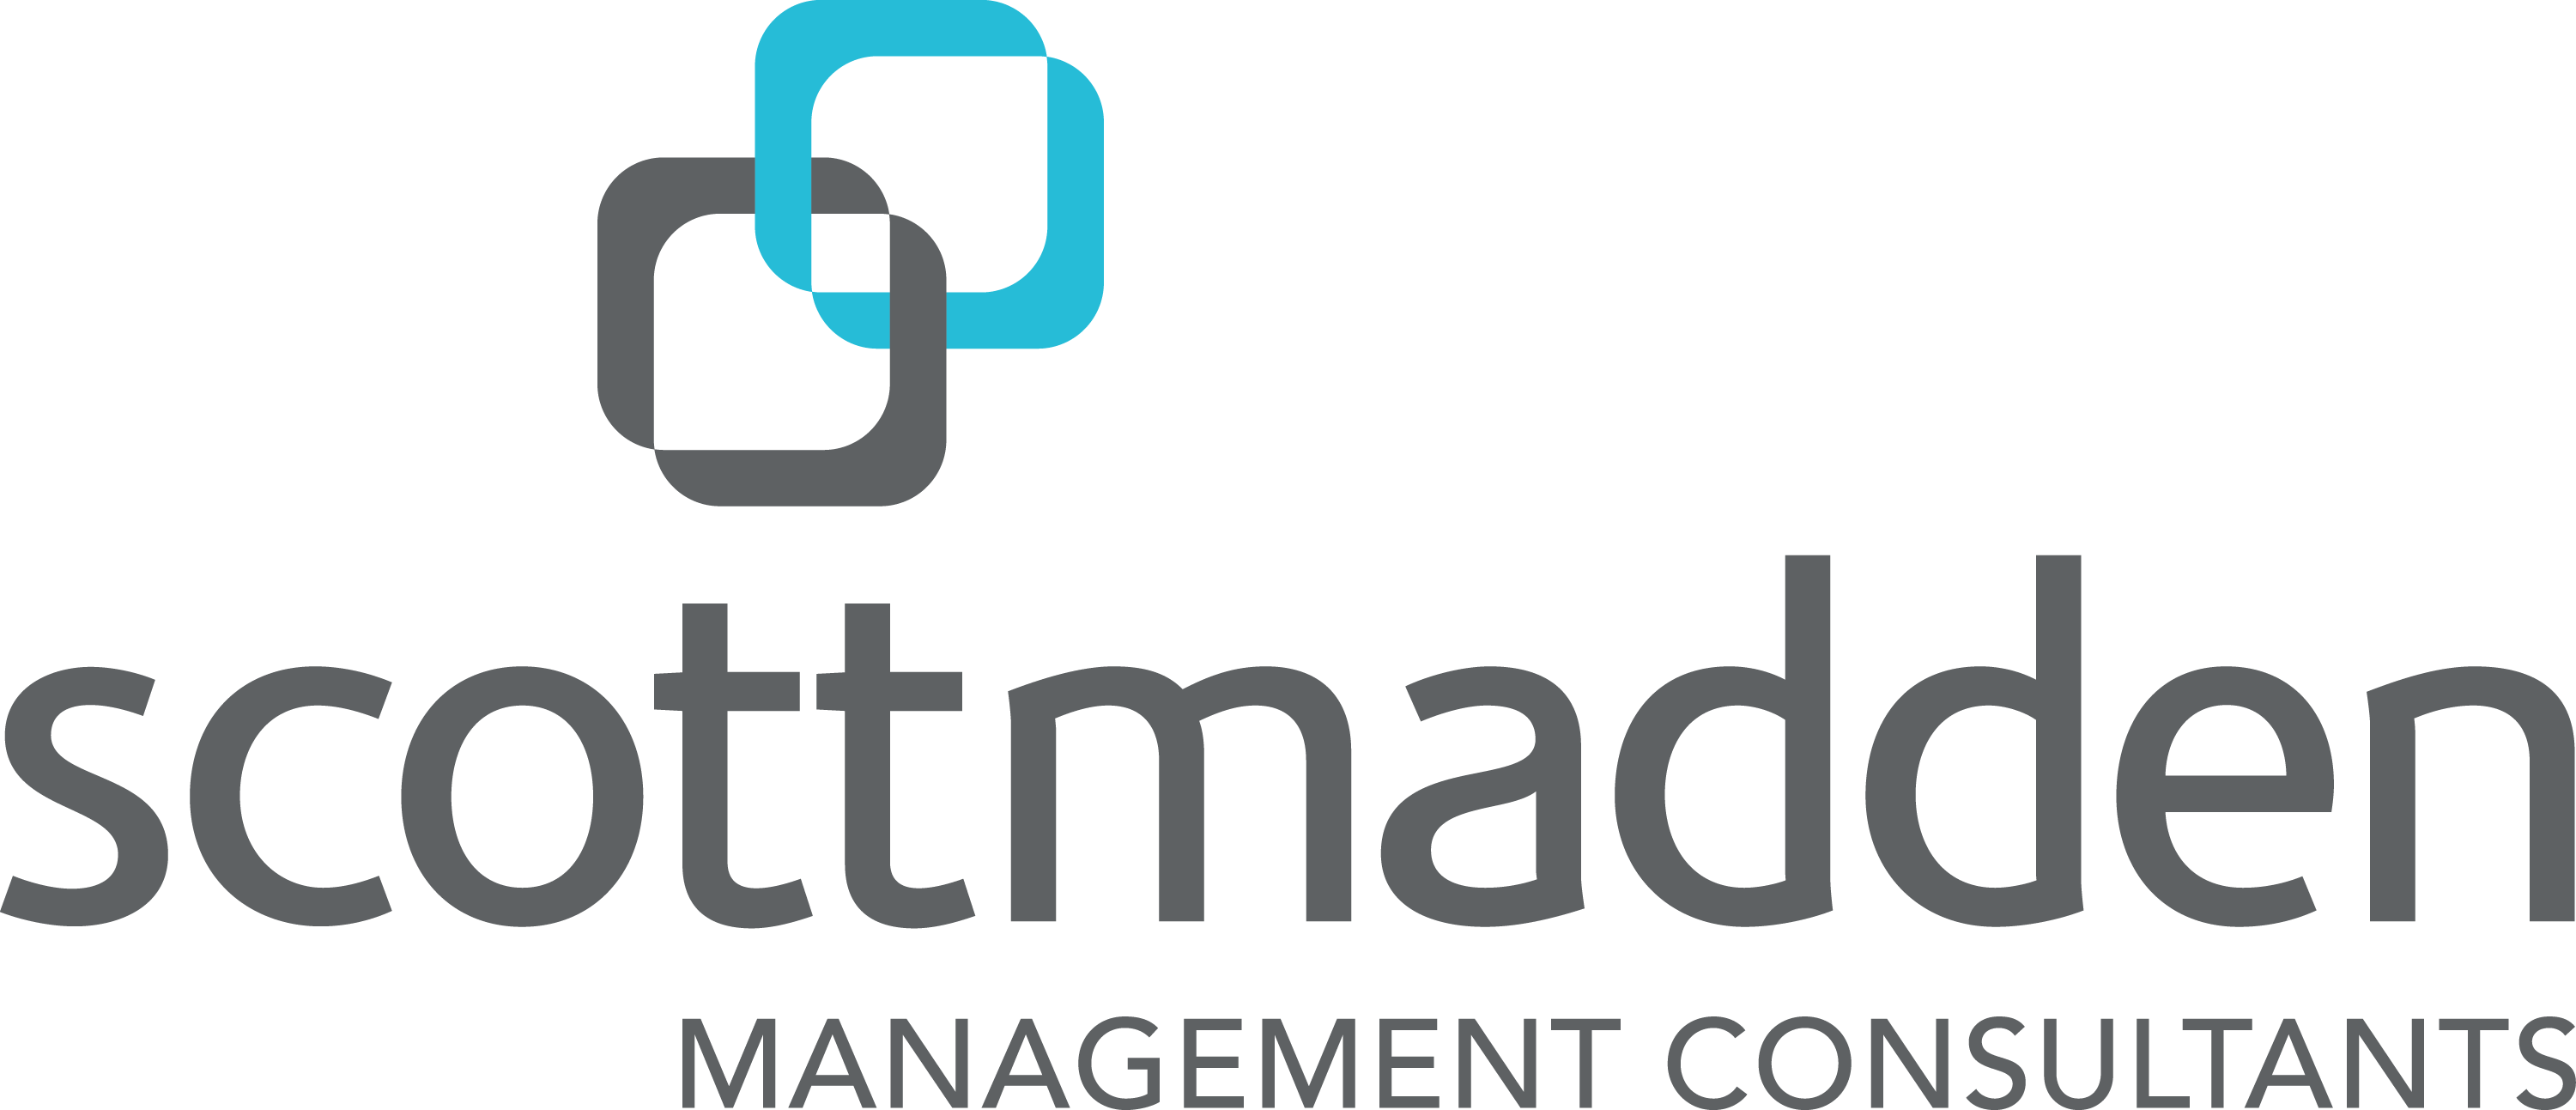 ScottMadden Company Logo